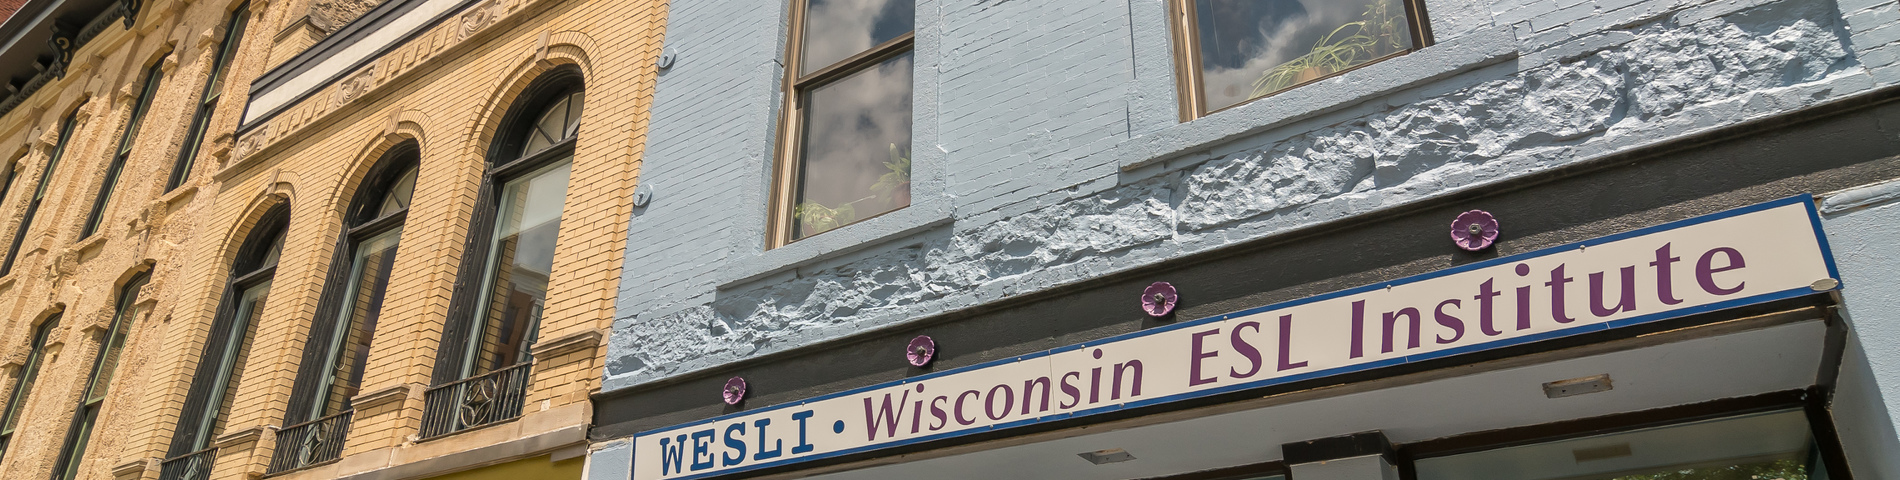 WESLI Wisconsin ESL Institute billede 1